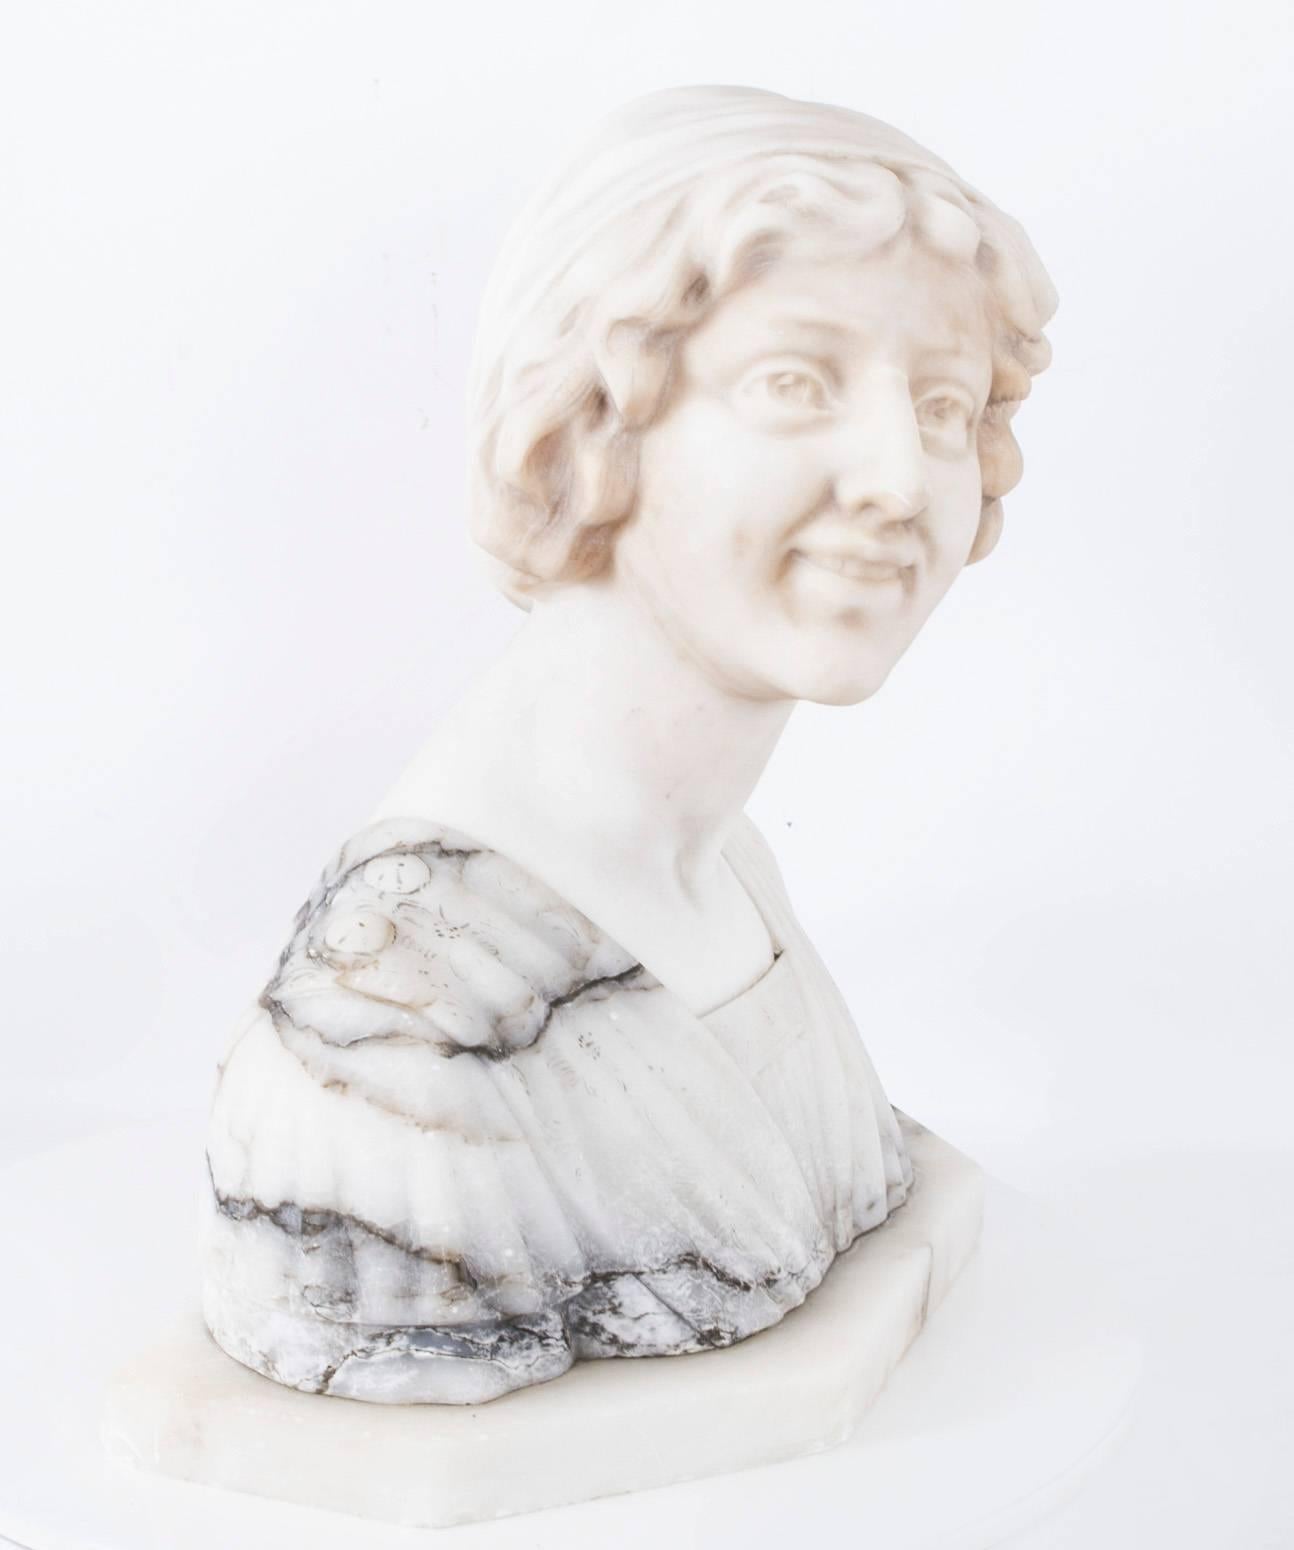 Il s'agit d'un magnifique buste antique en marbre blanc et gris représentant Iullette, une belle jeune fille, par le Professore Giuseppe Bessi, vers 1900.

Sa robe est ornée de détails ciselés, ses cheveux sont réunis dans un simple bonnet et